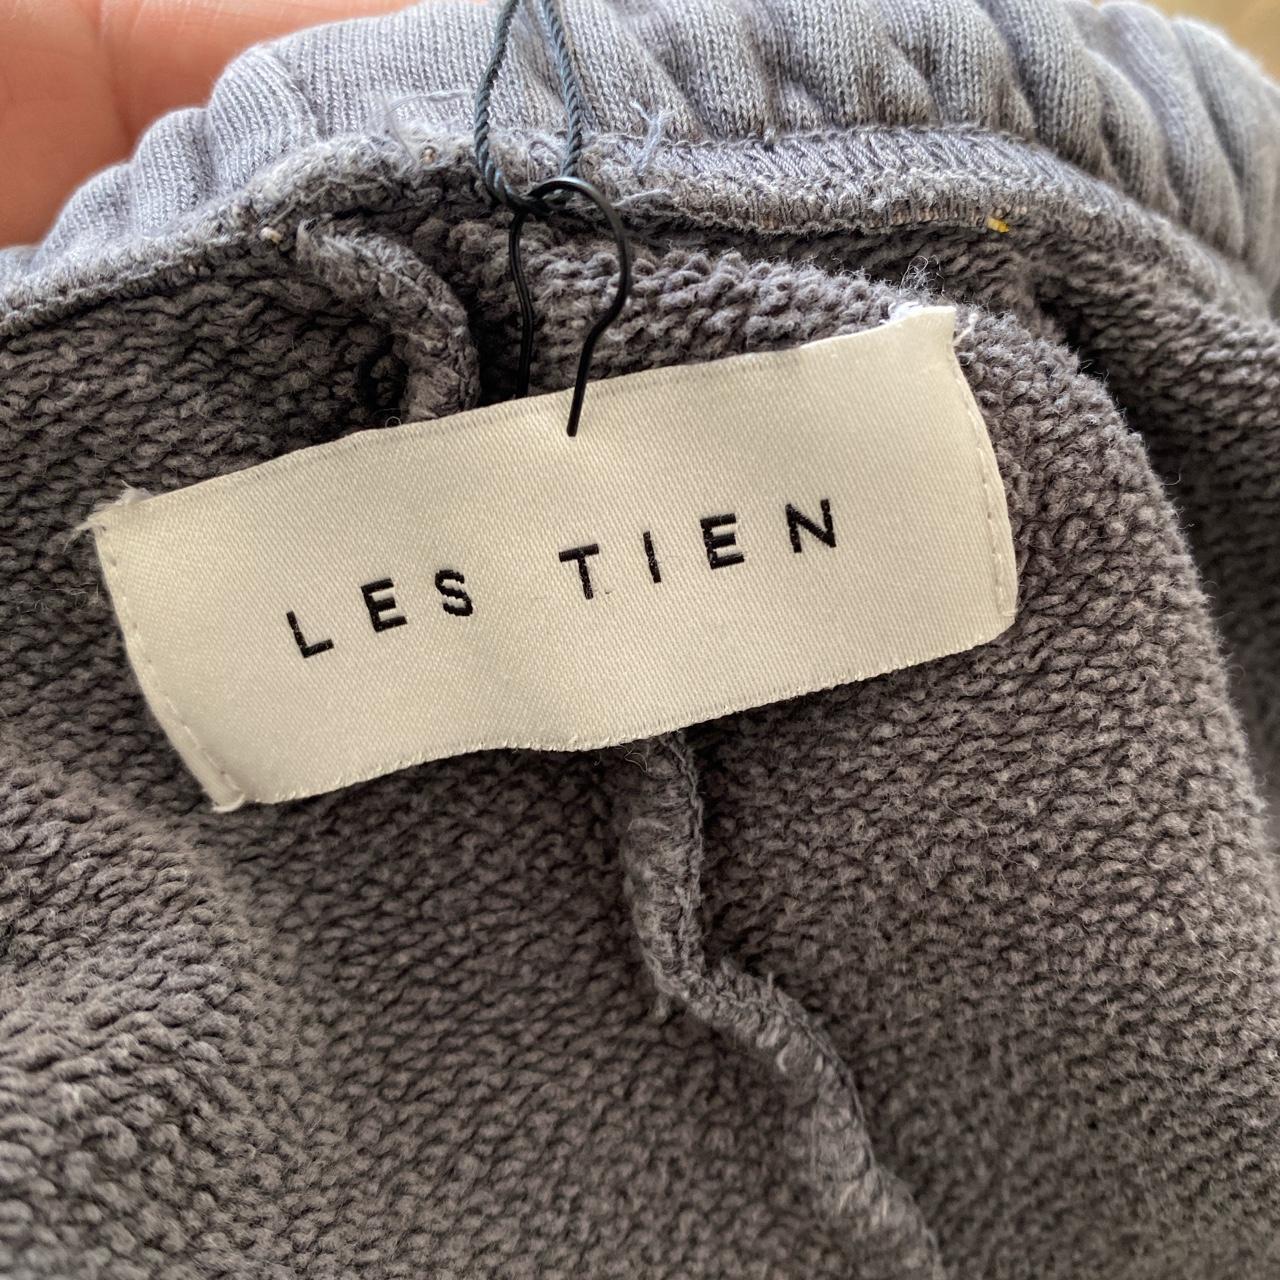 Product Image 2 - Les Tien Cotton Sweatpants 

Waist